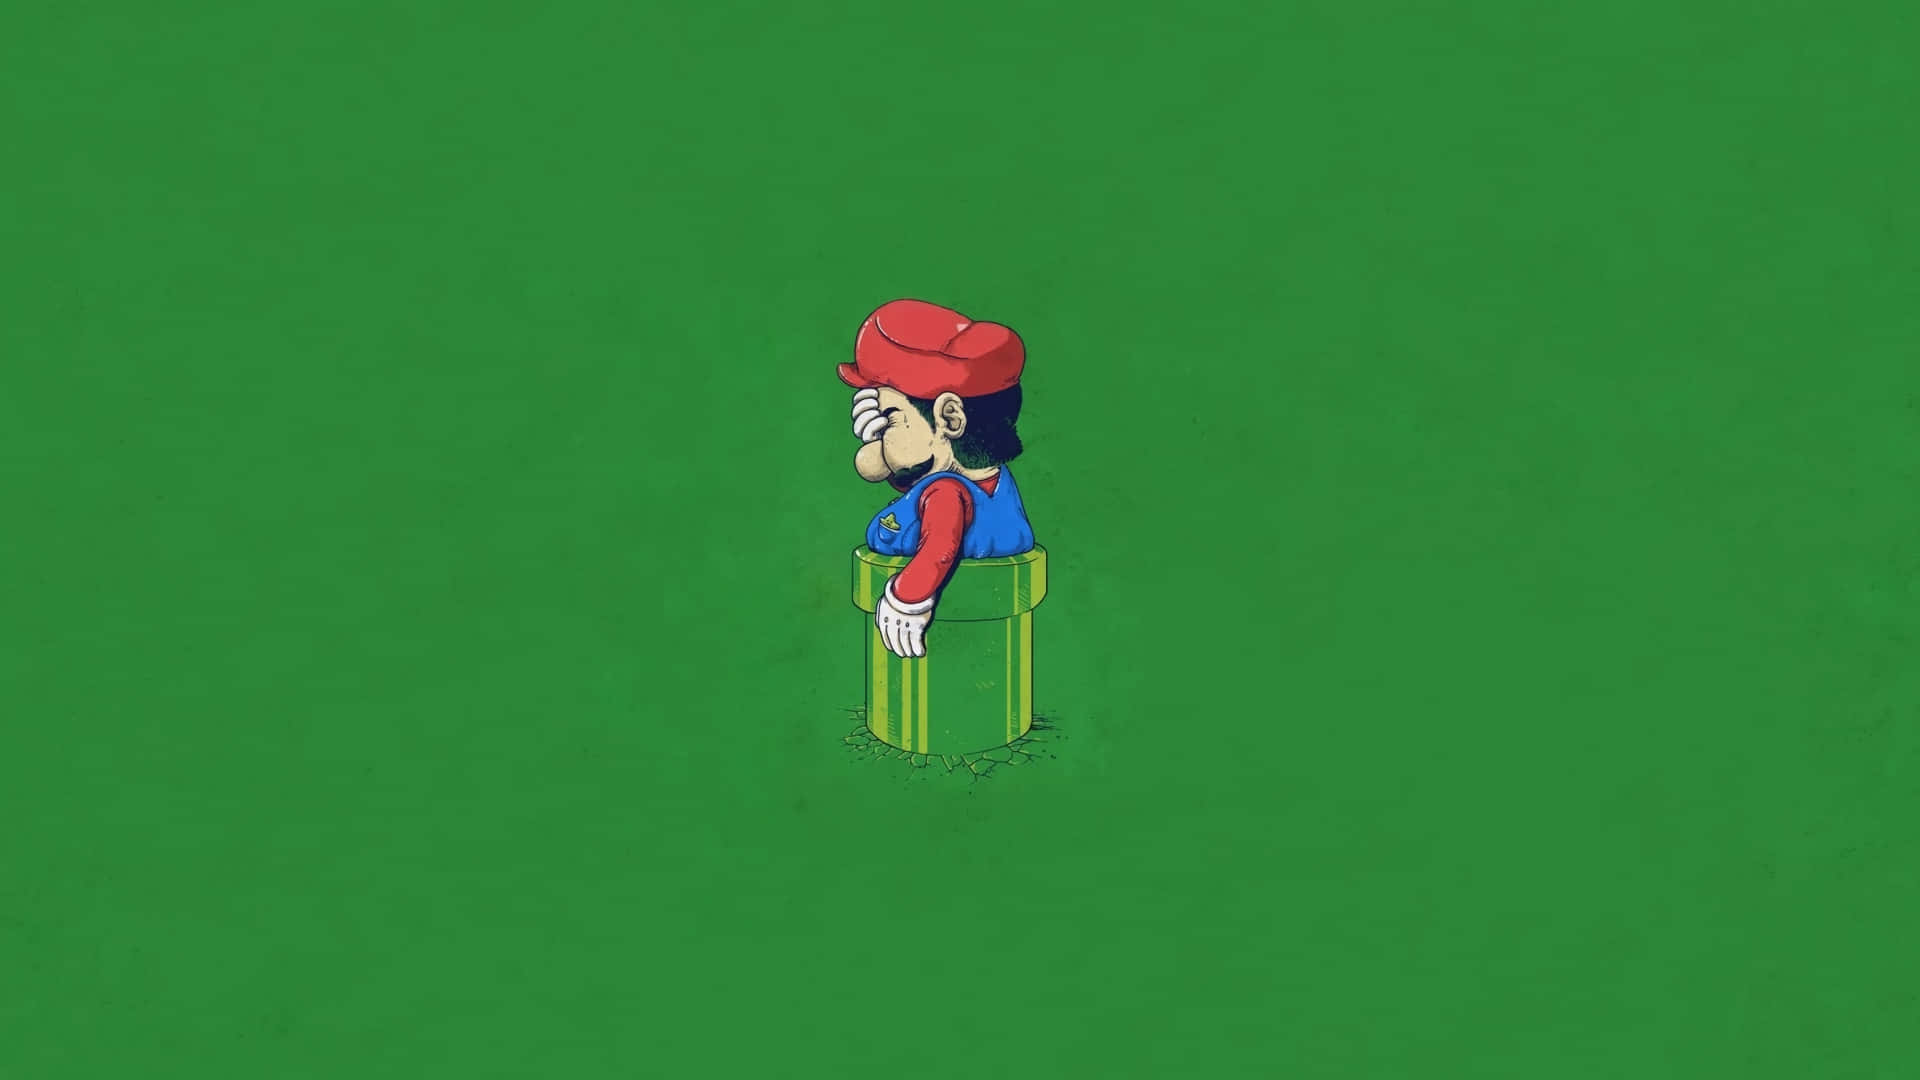 Imagemsuper Engraçada Do Super Mario.